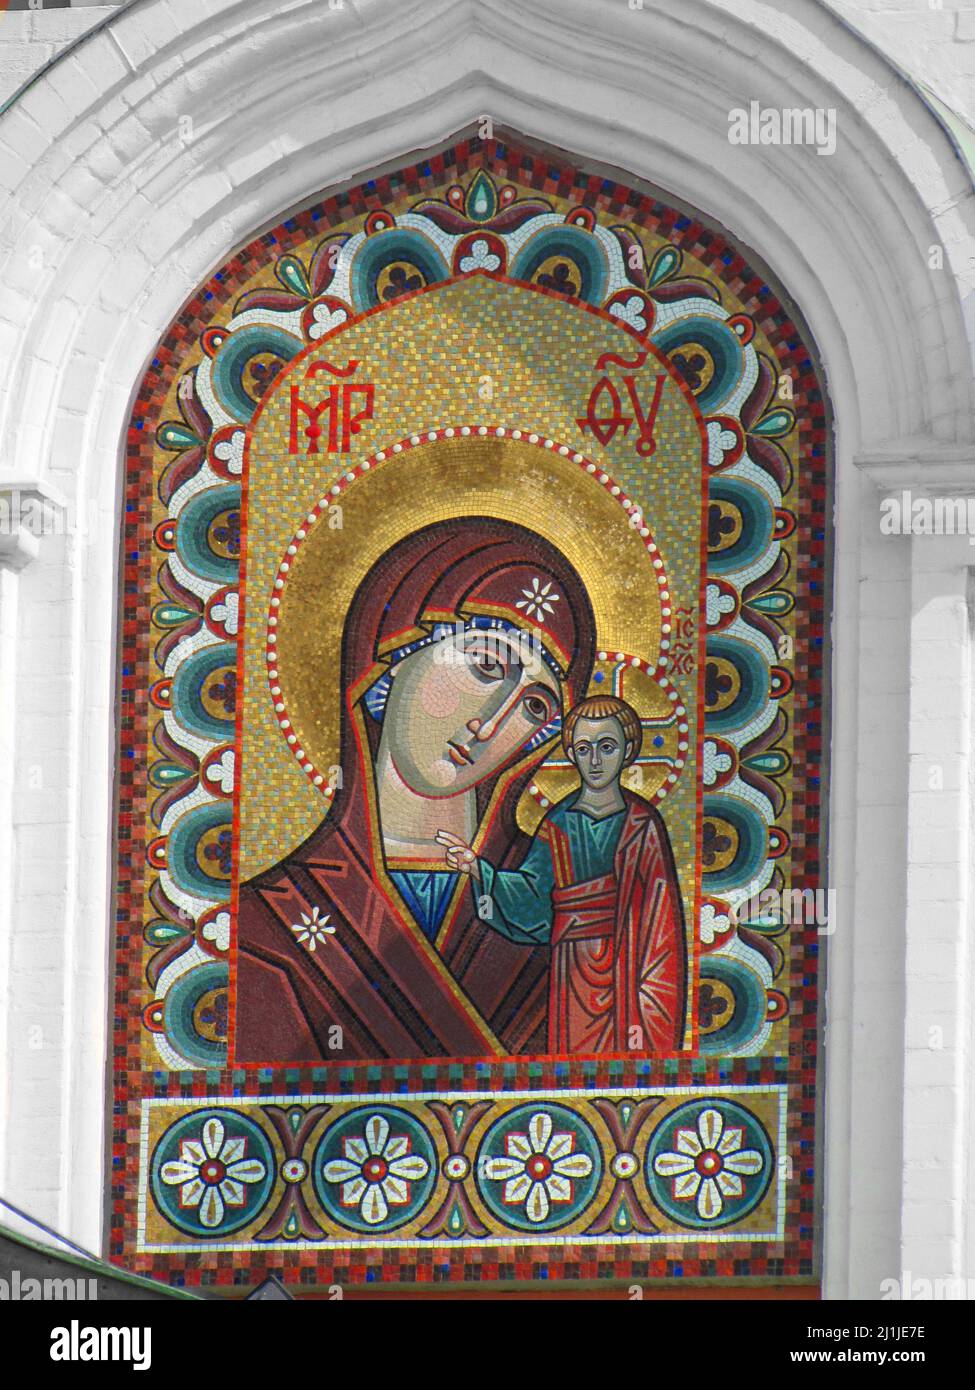 MOSCÚ, RUSIA - 14 de abril de 2009: Antiguo icono Mosaico de la Madre de Dios en la fachada de la Catedral de Kazán en la Plaza Roja de Moscú - capital de la Federación Rusa Foto de stock